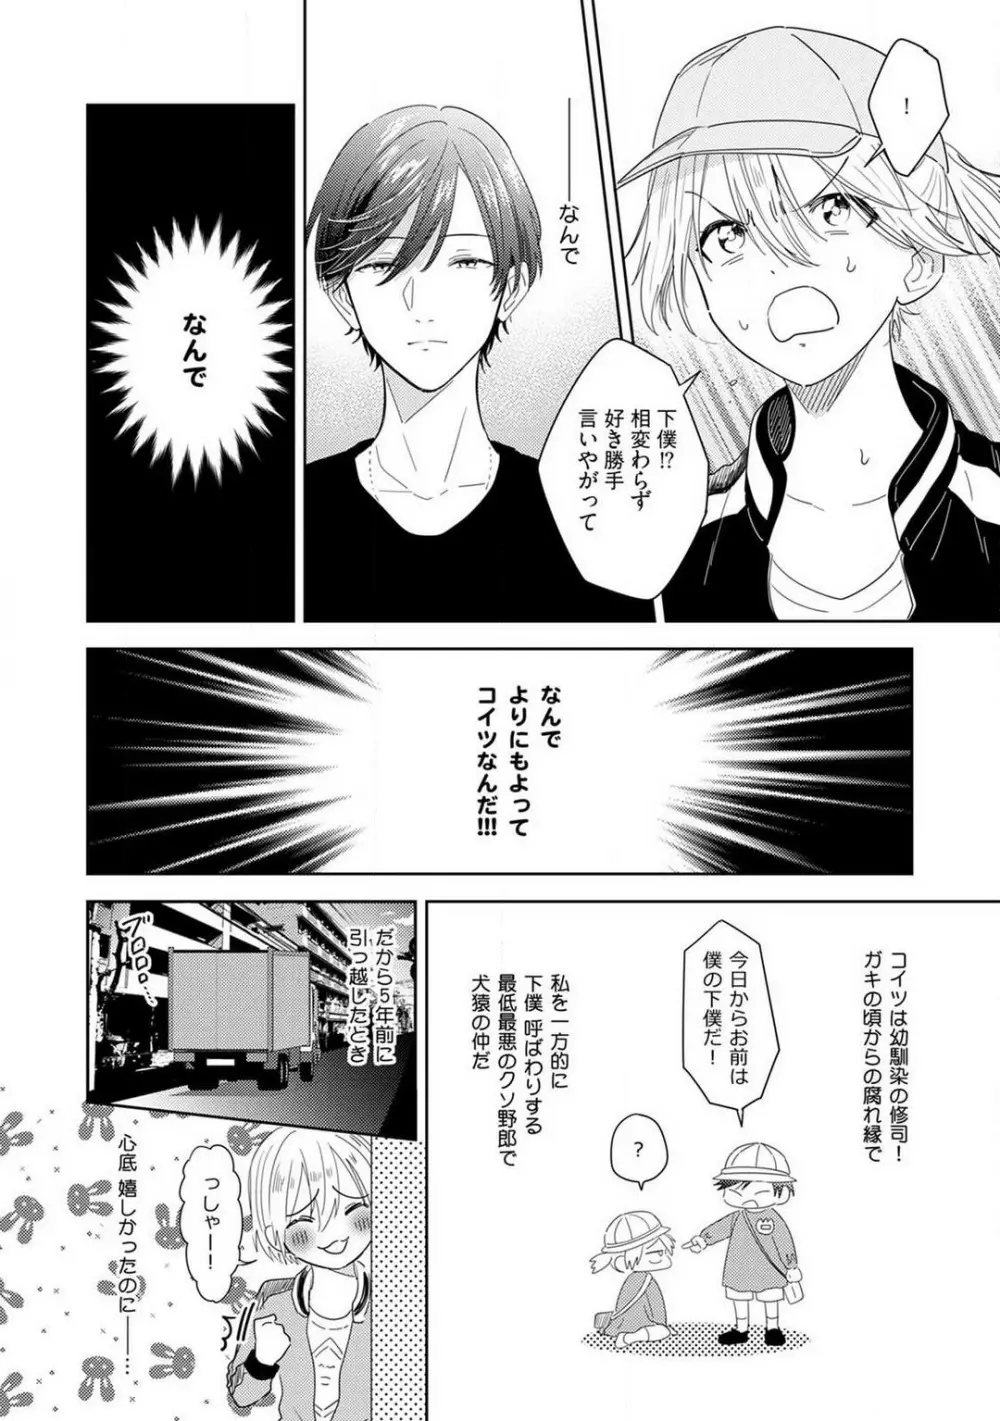 御曹司とヤンキー女のこじらせ恋 1-6 11ページ